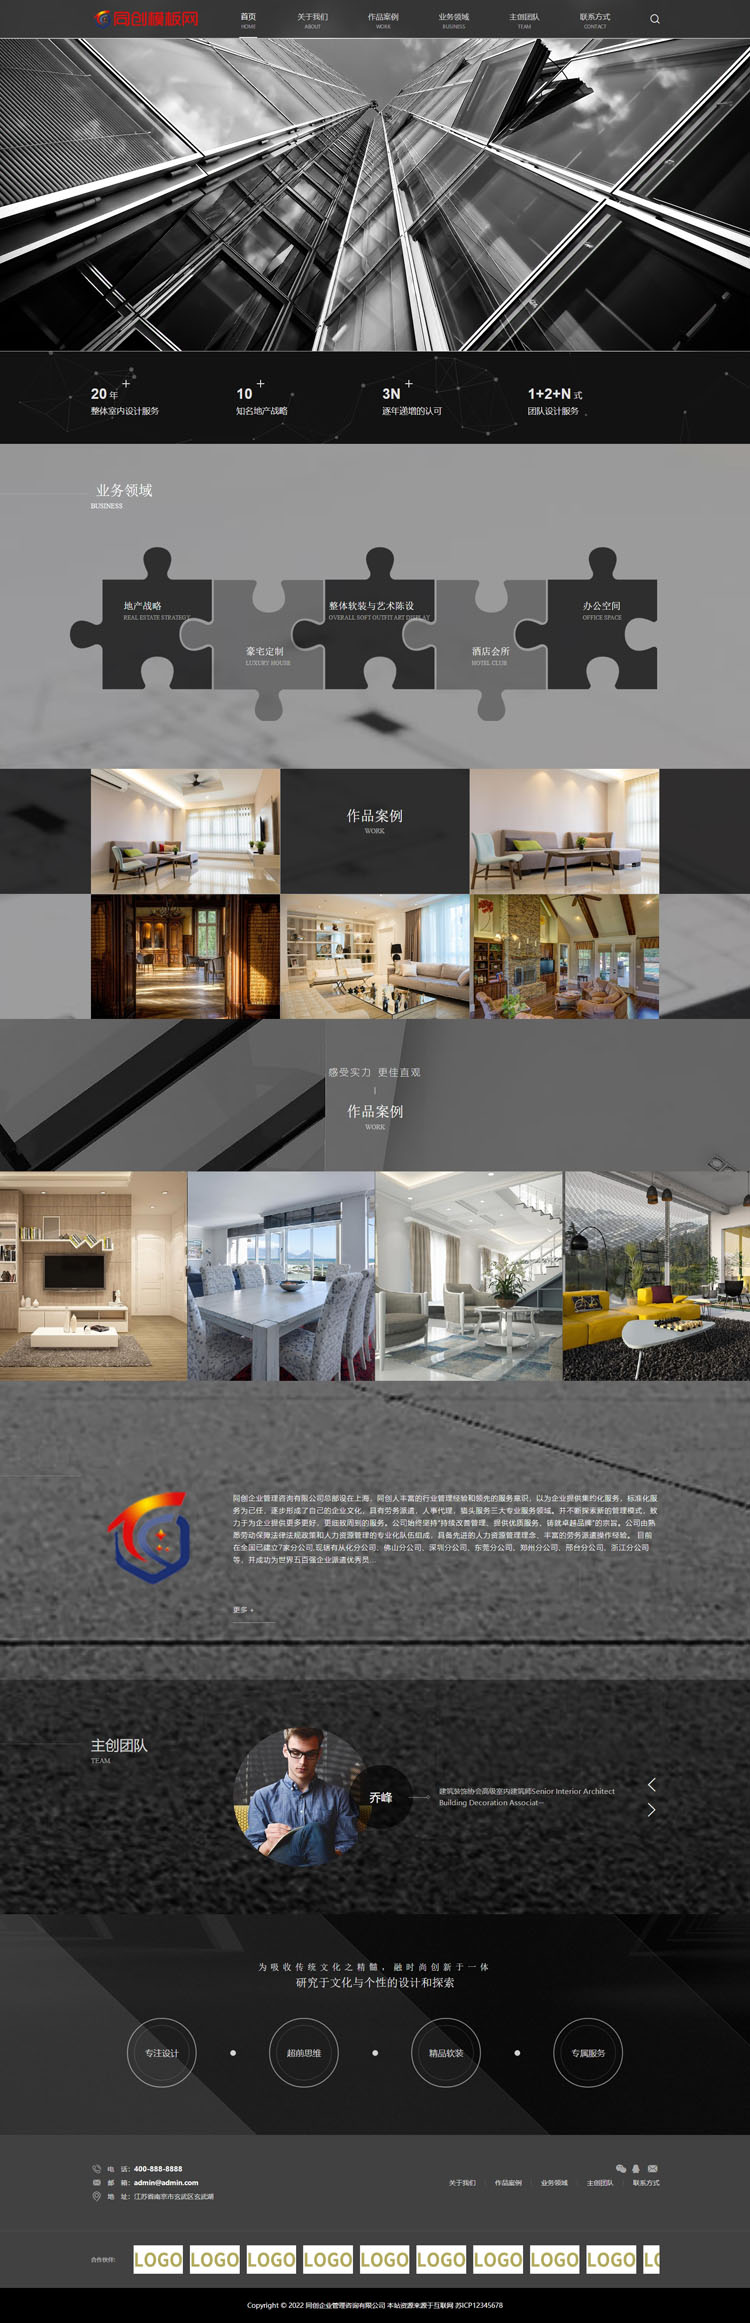 响应式建筑设计公司网站模板-XX218-2